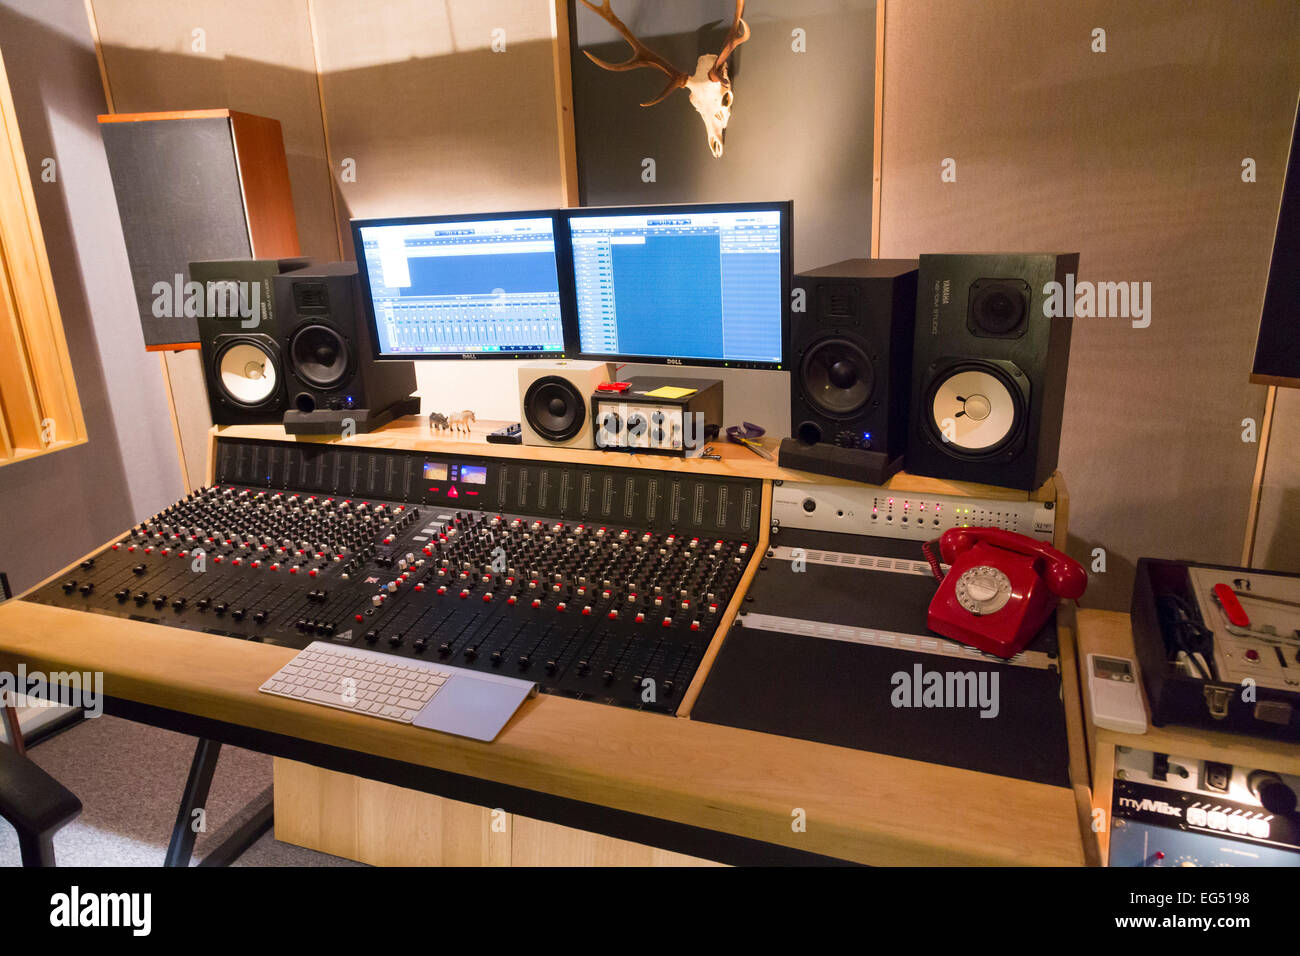 Undtagelse Se igennem blomst Recording studio mixing desk hi-res stock photography and images - Alamy